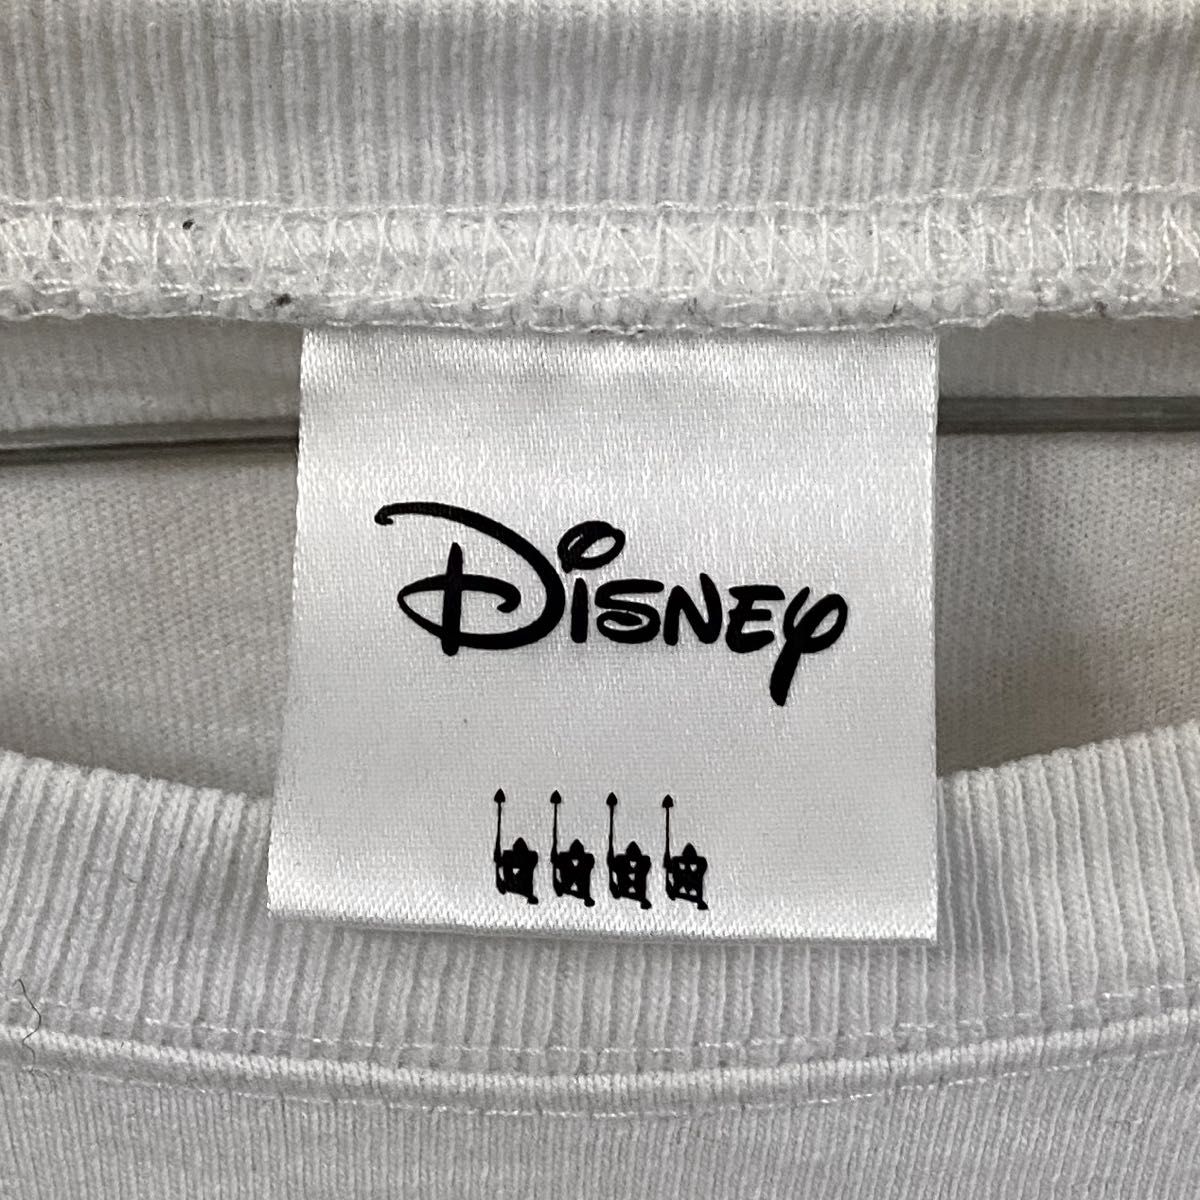 Disney ディズニー 不思議の国のアリス 長袖 Tシャツ Tee ロンT トップス USED ユーズド 古着 ユニセックス